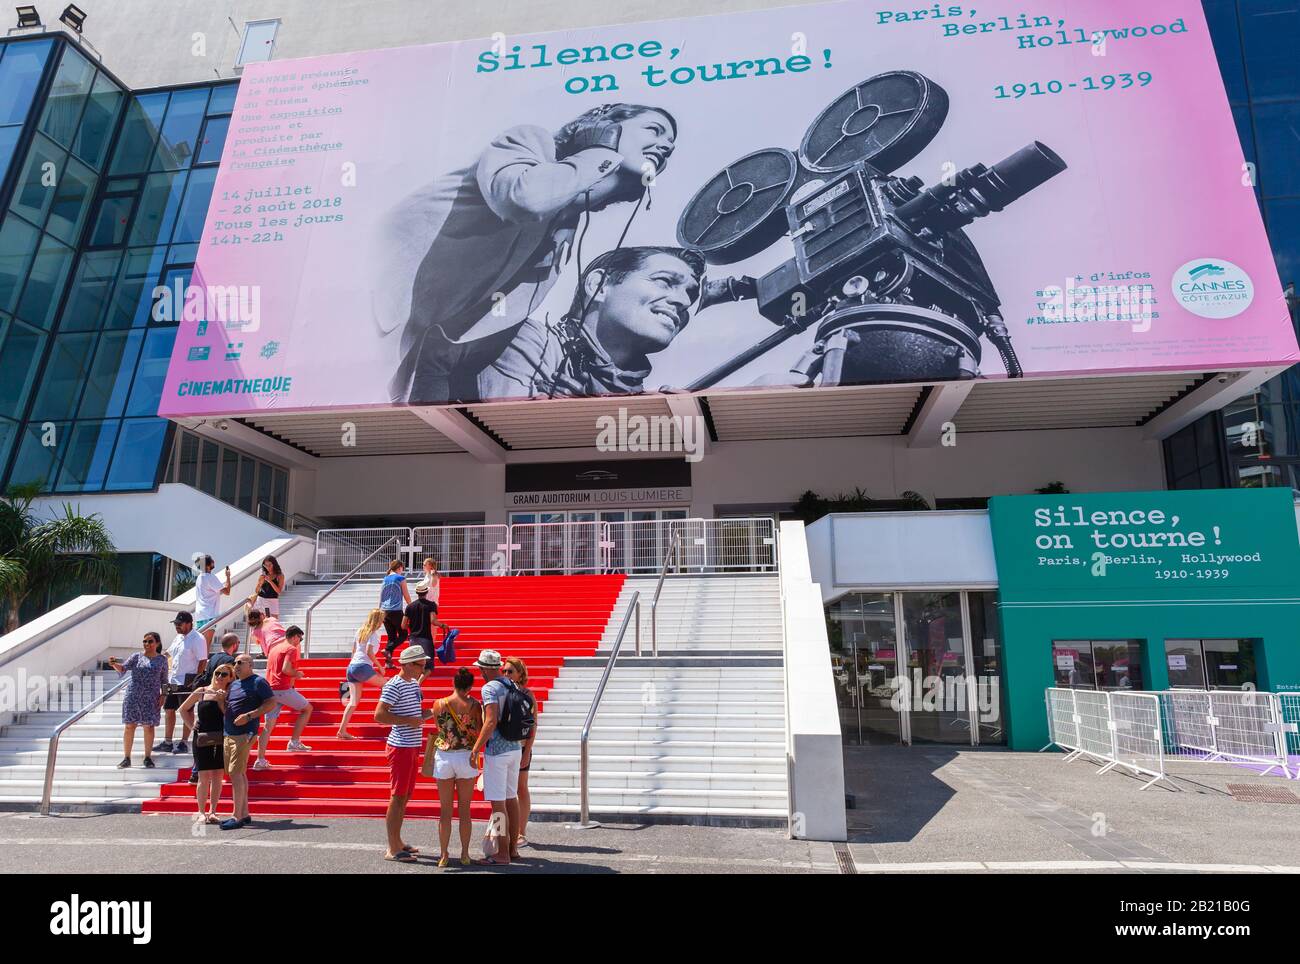 Cannes, Francia - 14 de agosto de 2018: Los turistas están cerca del Palais des Festivals et des Congres, es un centro de convenciones, el lugar de celebración del cine de Cannes Foto de stock